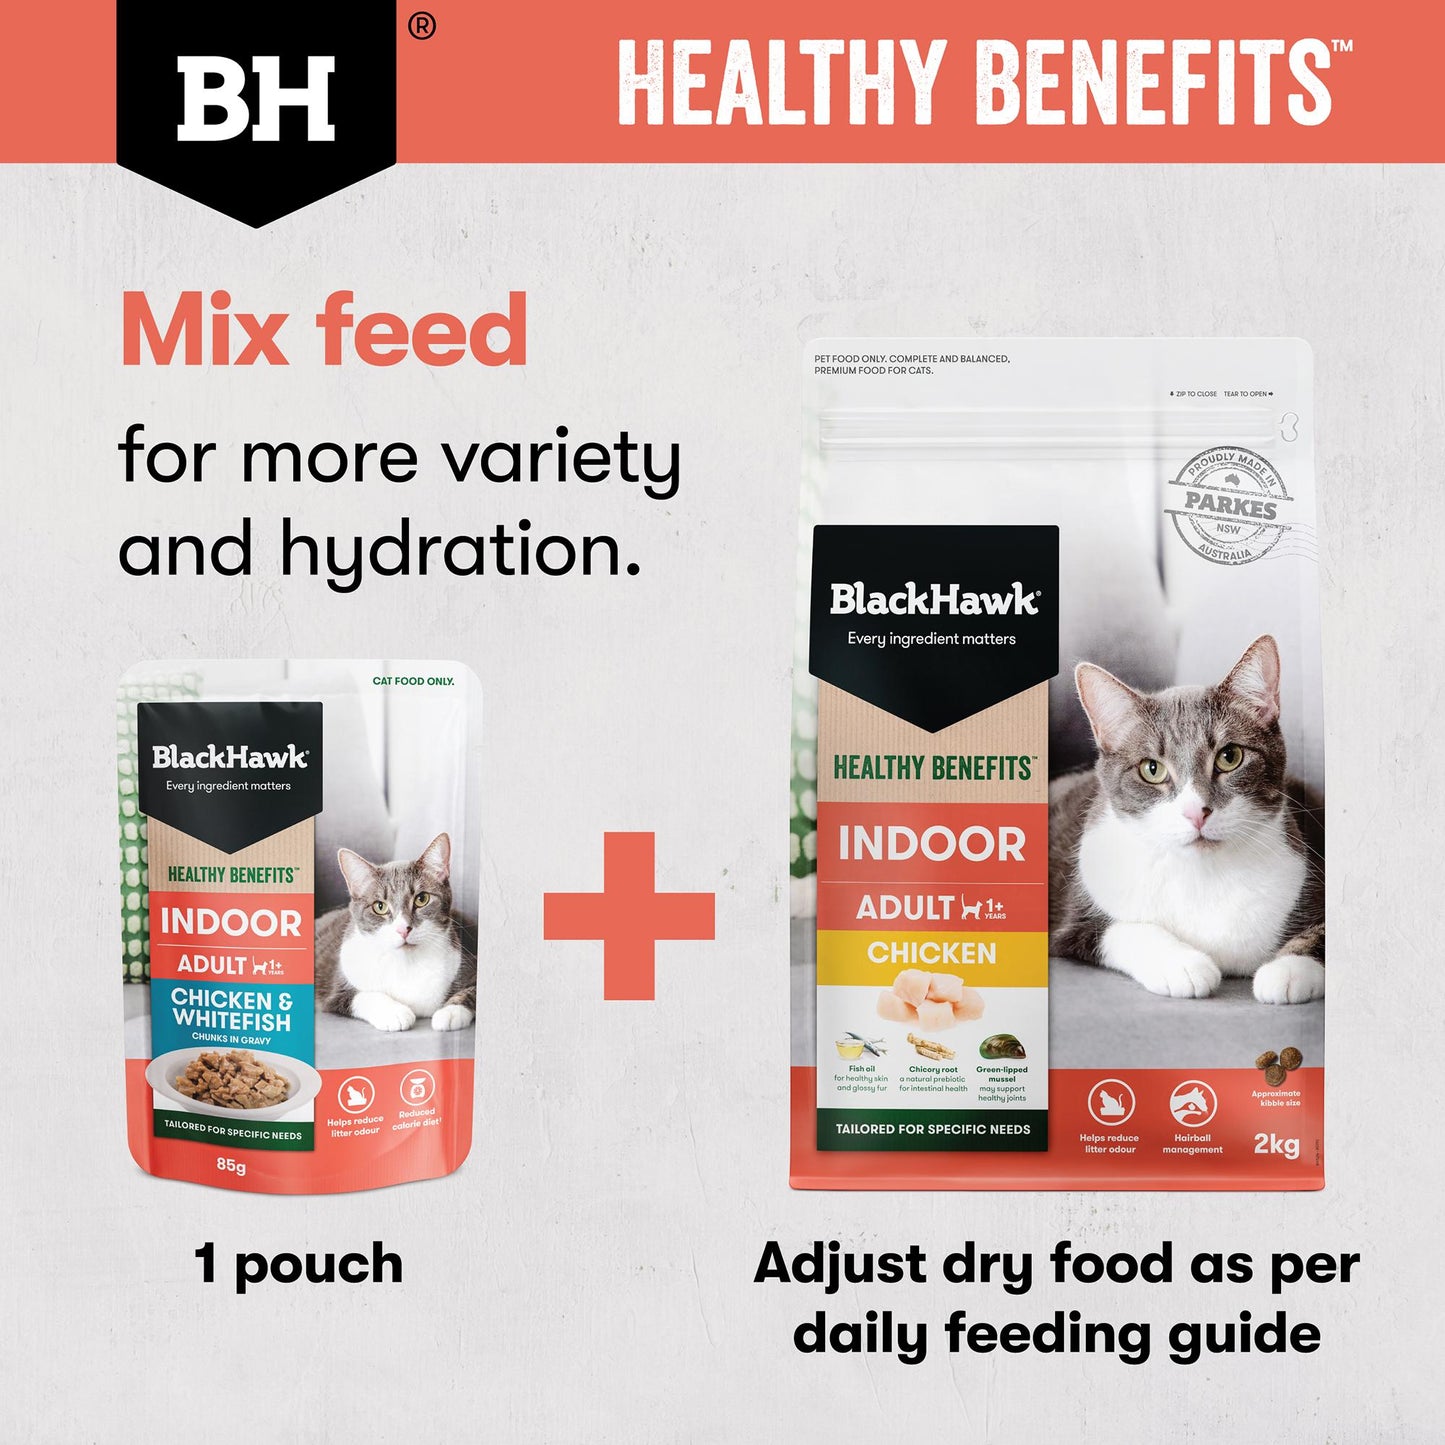 Black Hawk Healthy Benefits Indoor Chicken Dry Cat Food